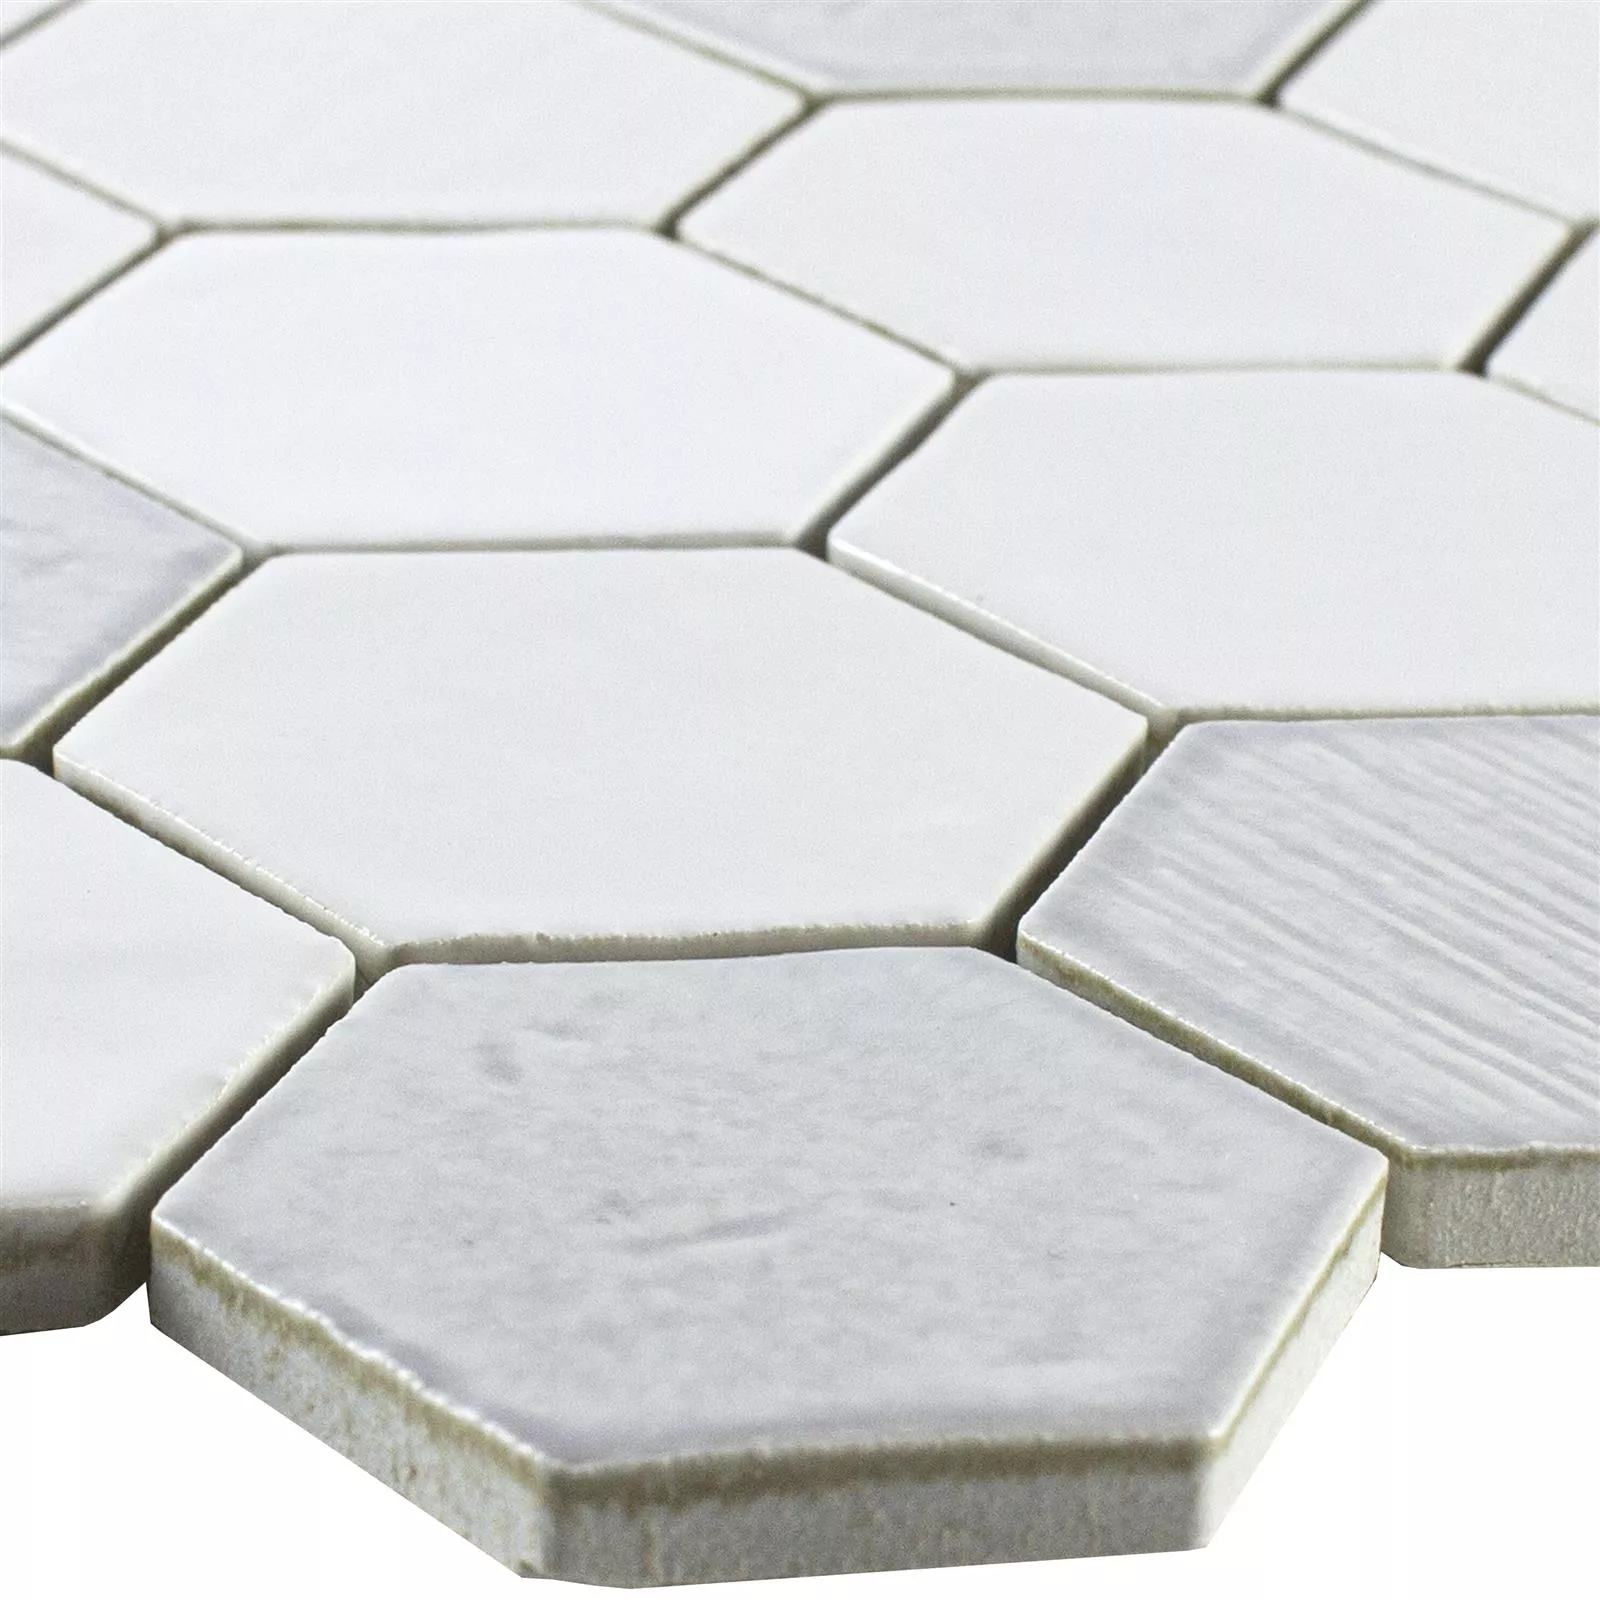 Cerámica Azulejos De Mosaico Roseburg Hexagonales Brillante Blanco